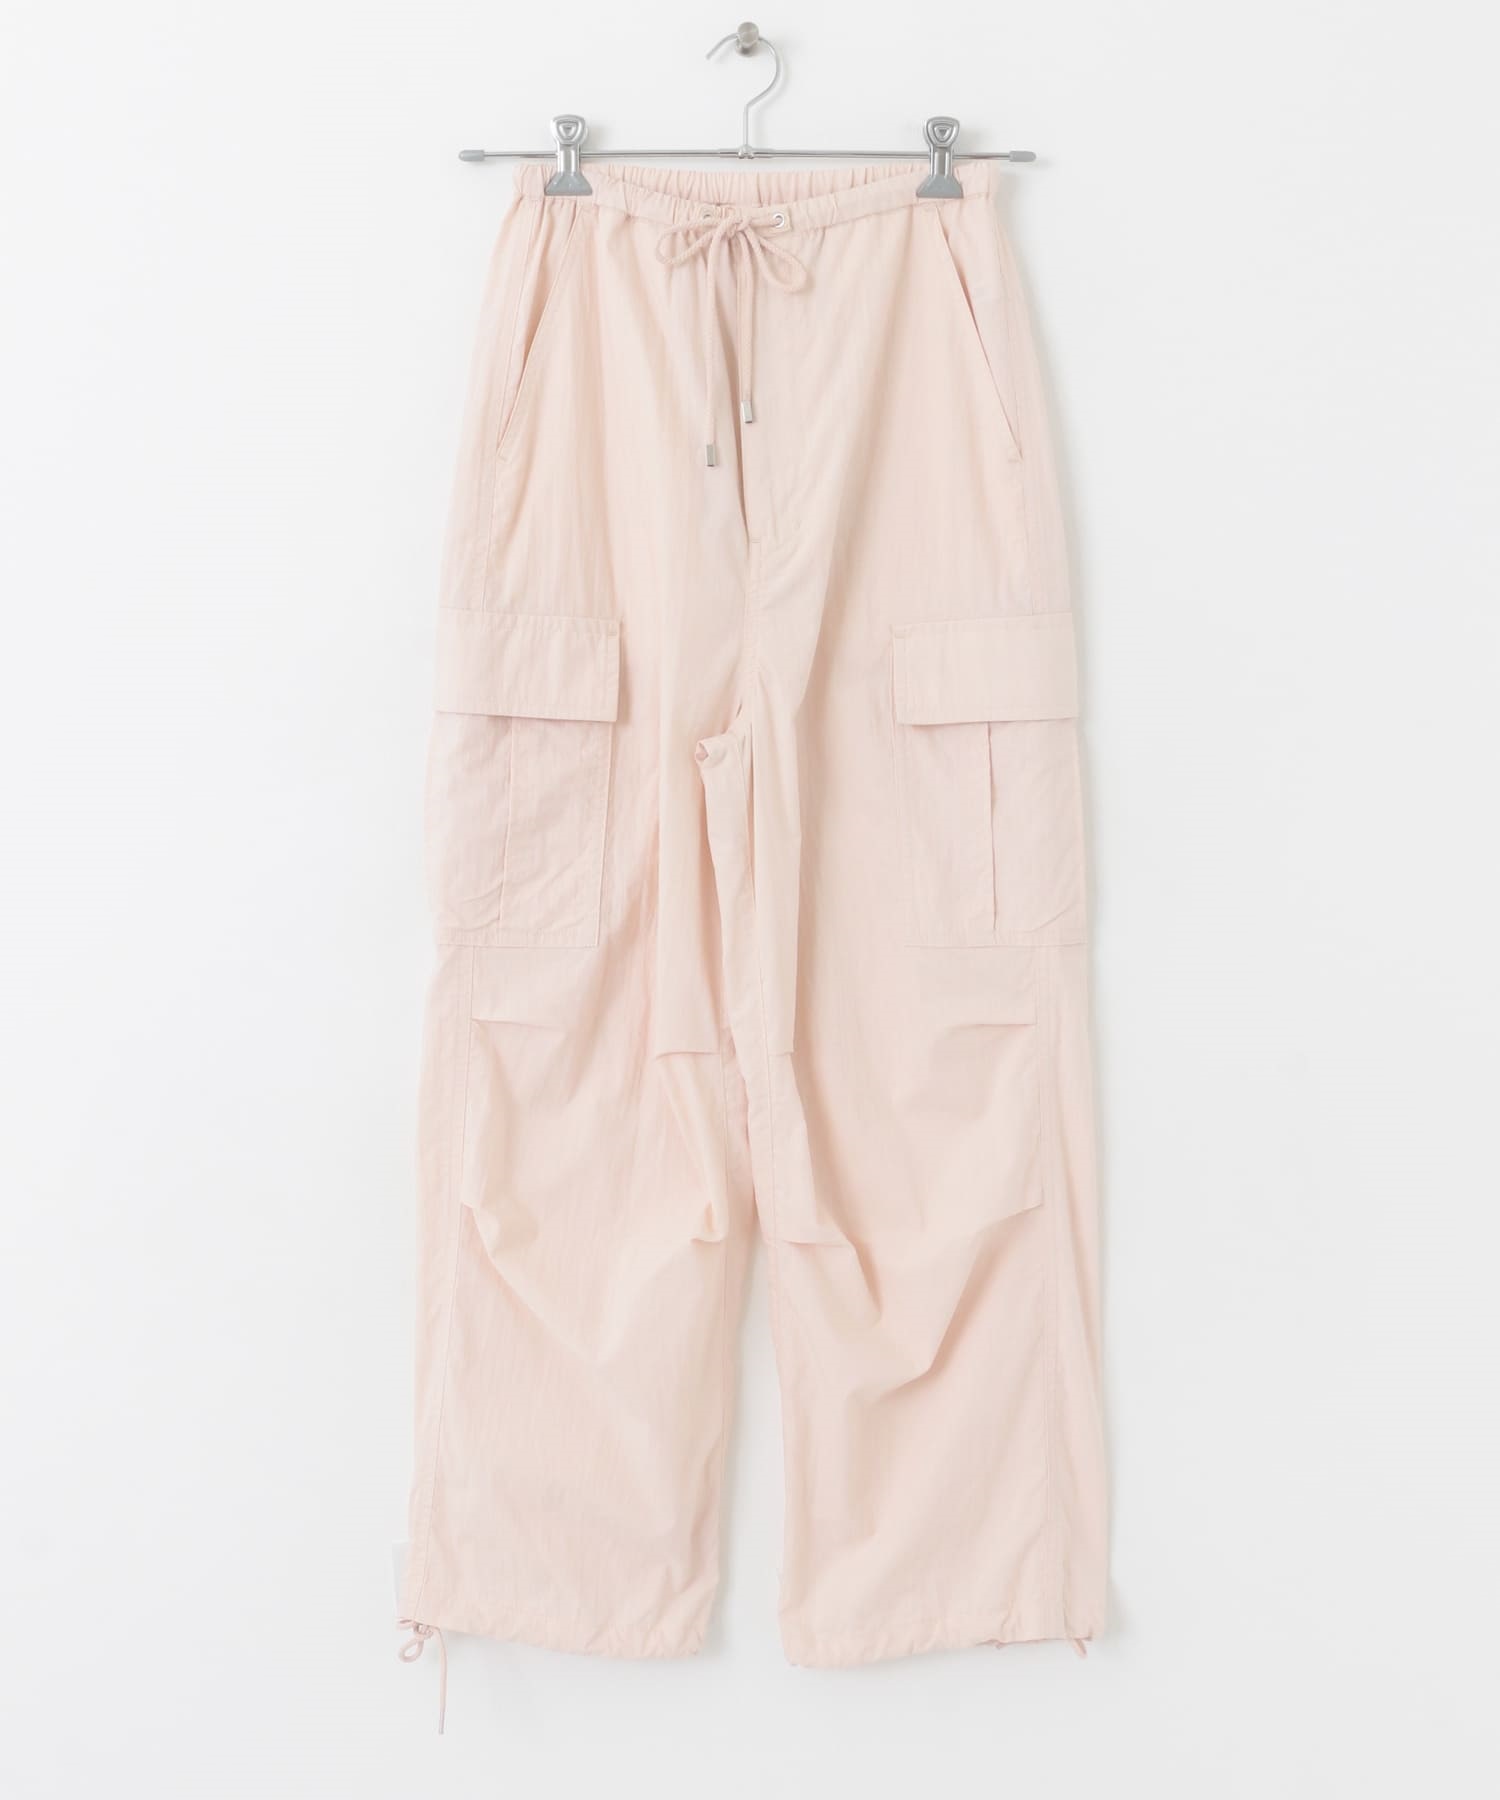 降落傘褲(粉紅色-FREE-PINK)